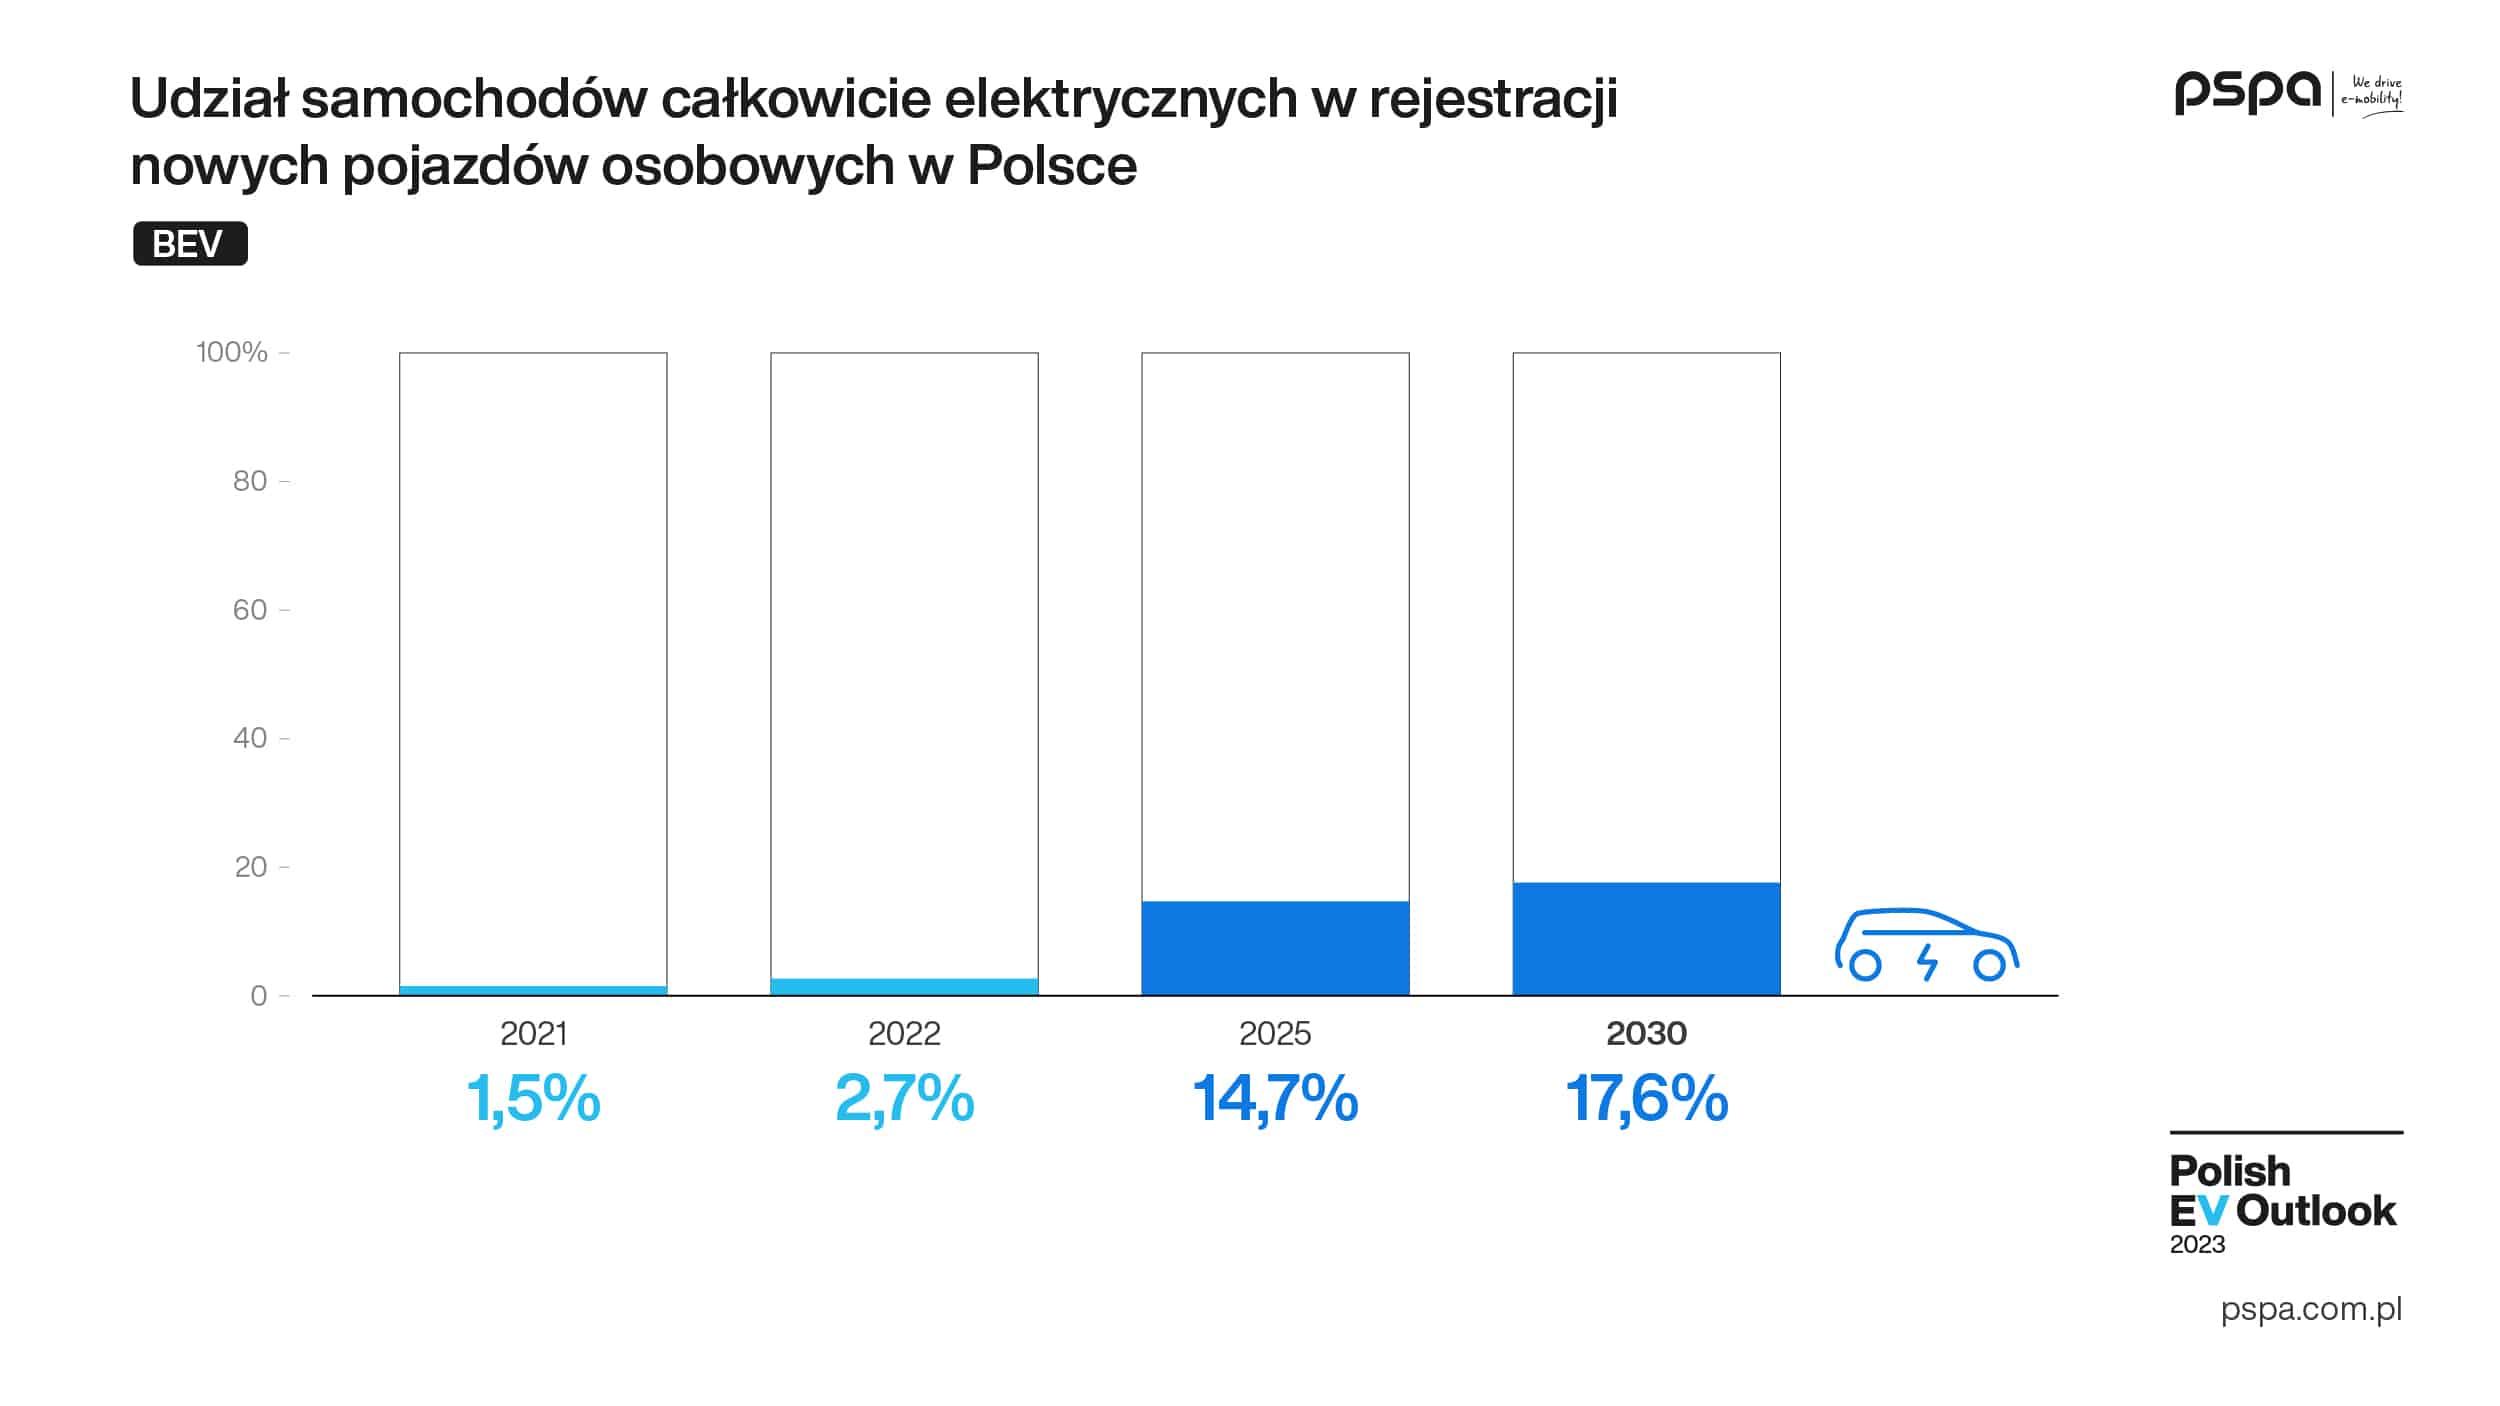 Polish_EV_Outlook_2023_wyd_I_komunikat_grafika_pojazdy_03